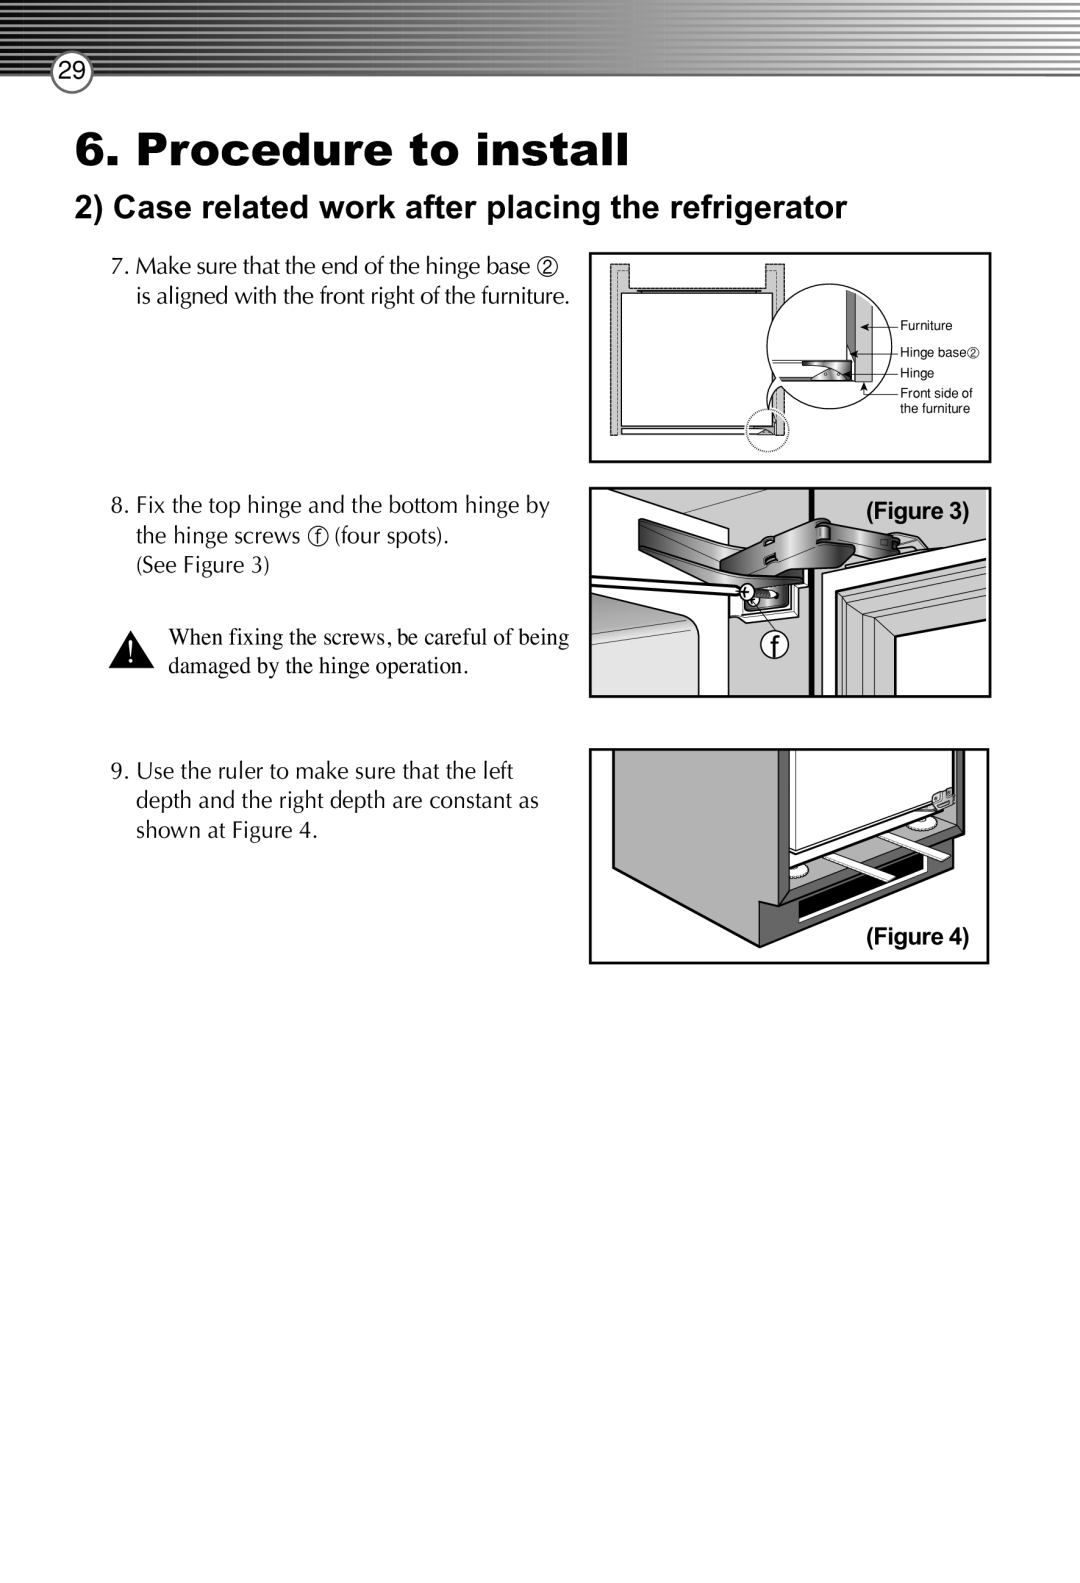 Smeg FB30AFNF, LB30AFNF manual Procedure to install, Furniture, Front side of the furniture, Hinge base 